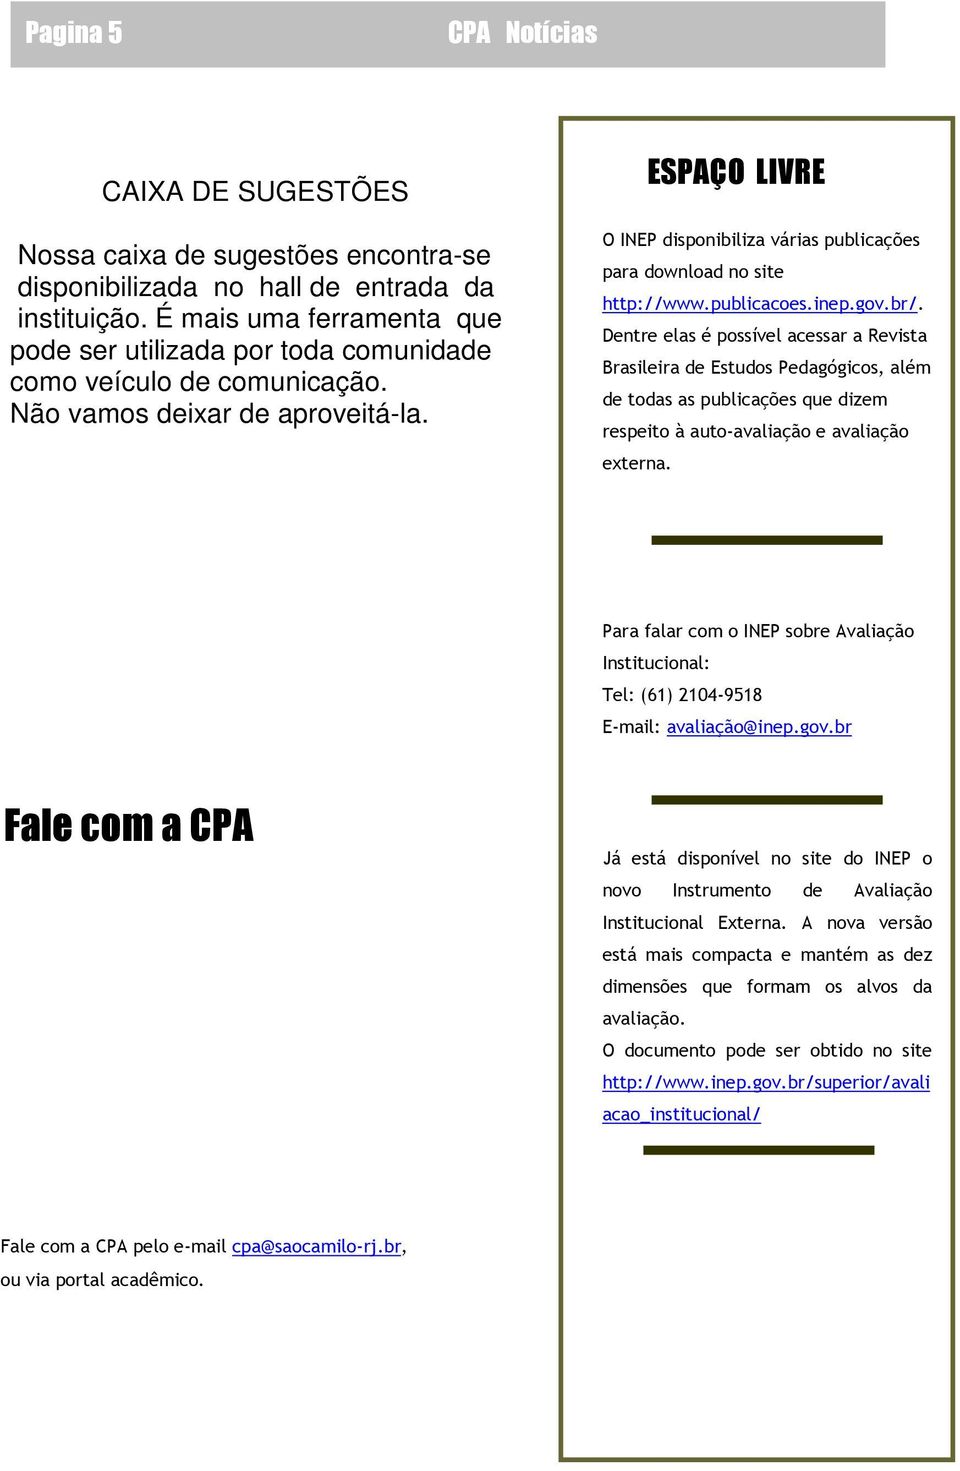 ESPAÇO LIVRE O INEP disponibiliza várias publicações para download no site http://www.publicacoes.inep.gov.br/.